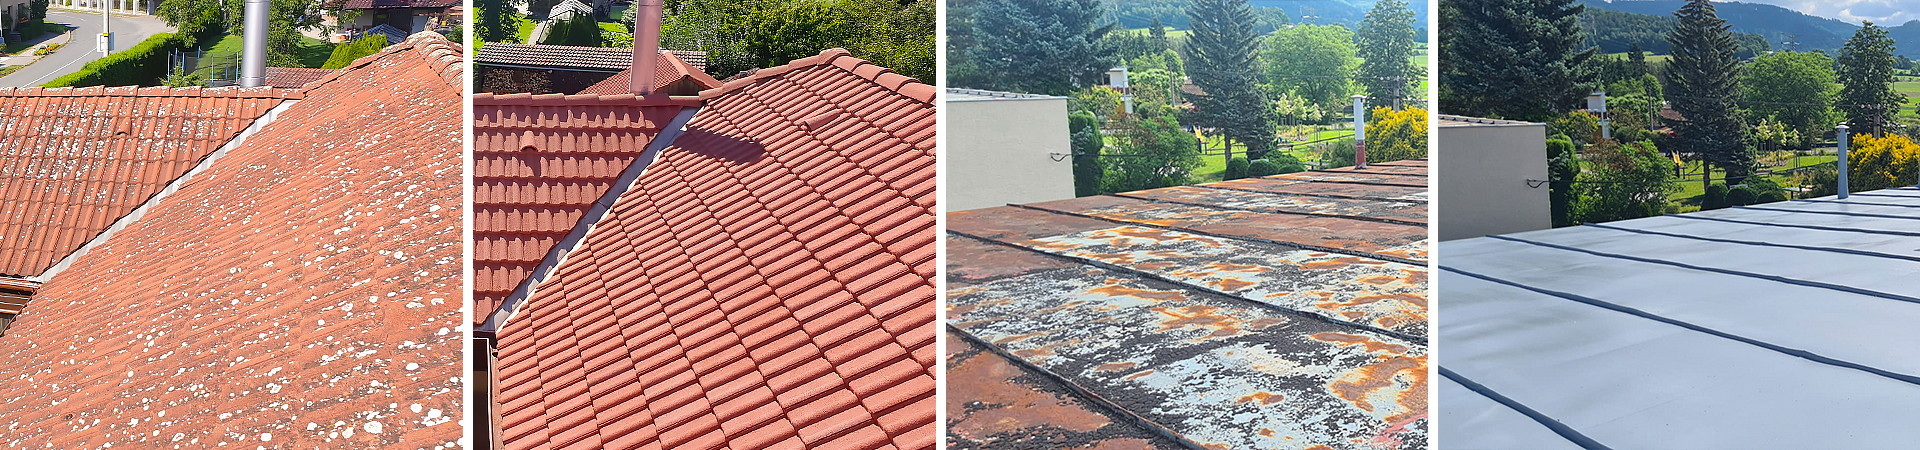 Rozdíl mezi vyčištěnou a znečištěnou střechou a rozdíl mezi rezavou a natřenou střechou